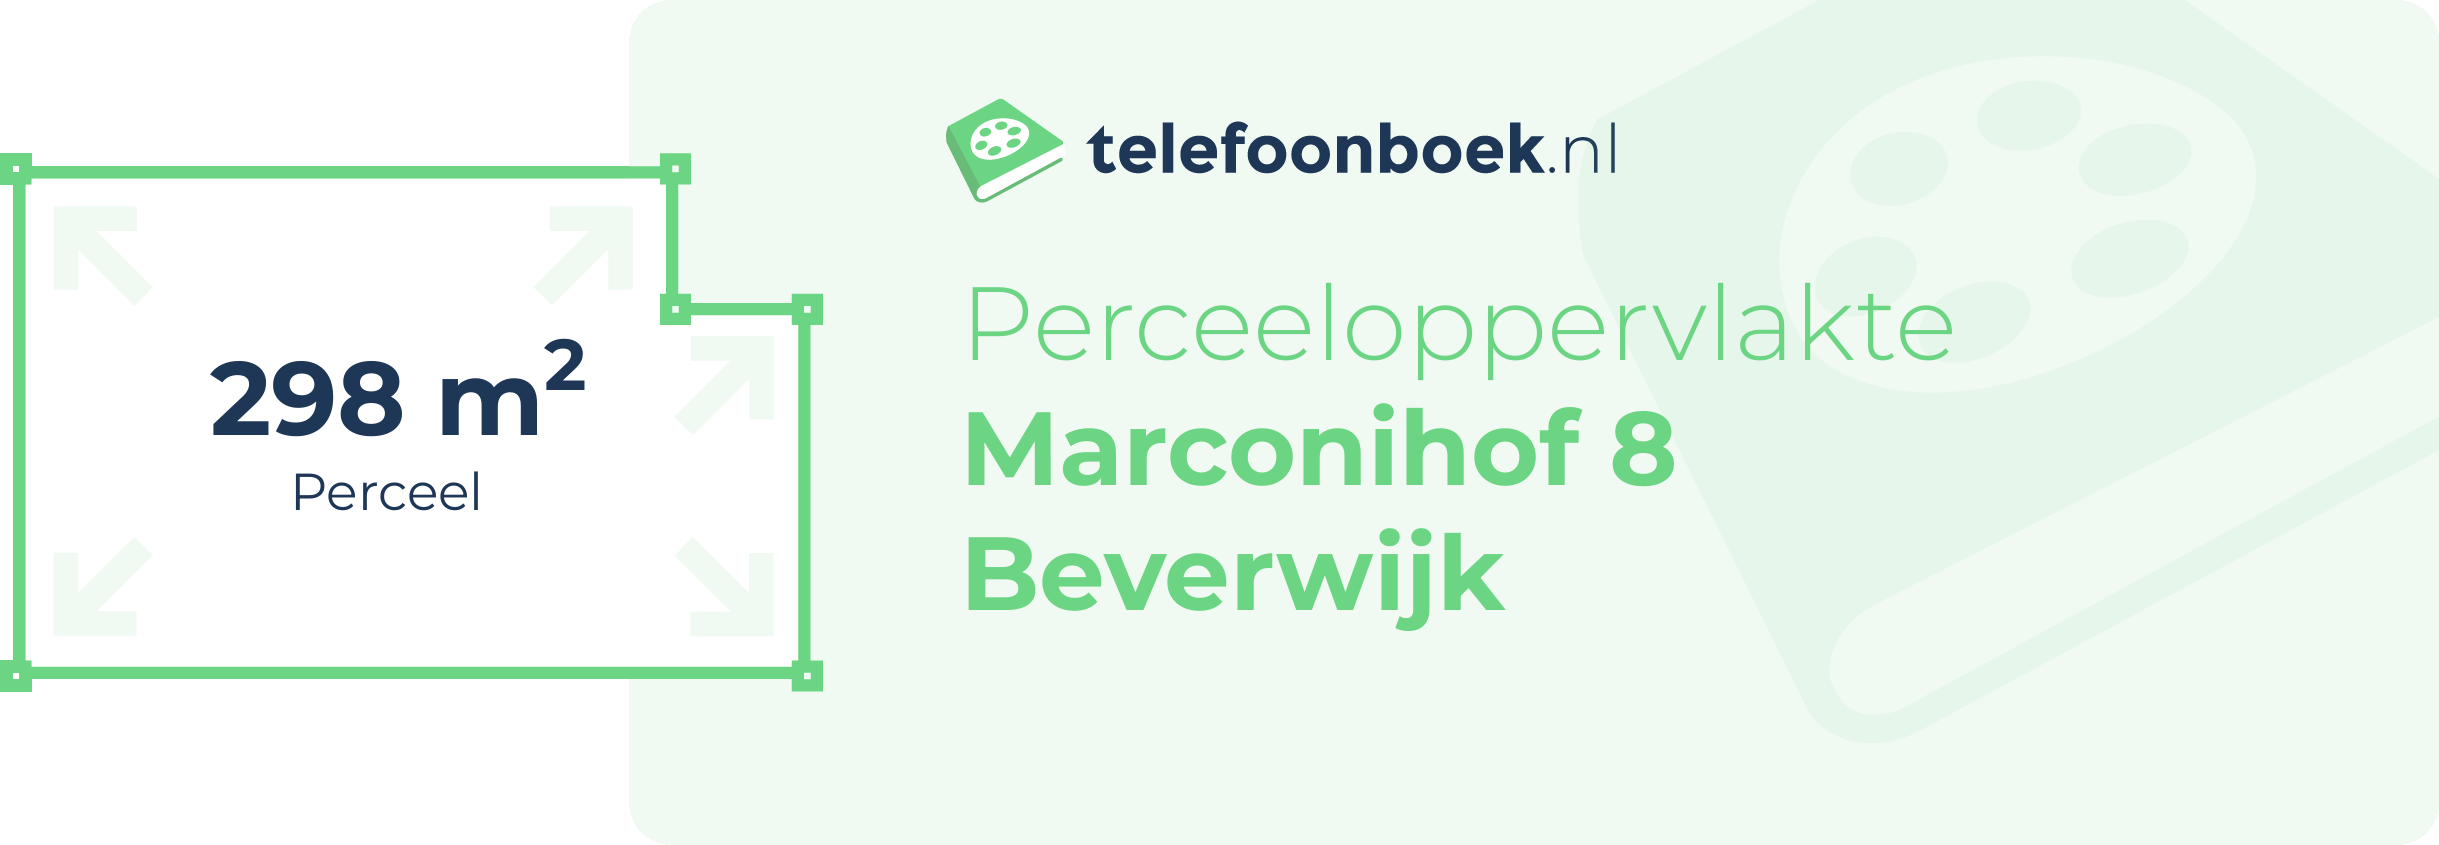 Perceeloppervlakte Marconihof 8 Beverwijk